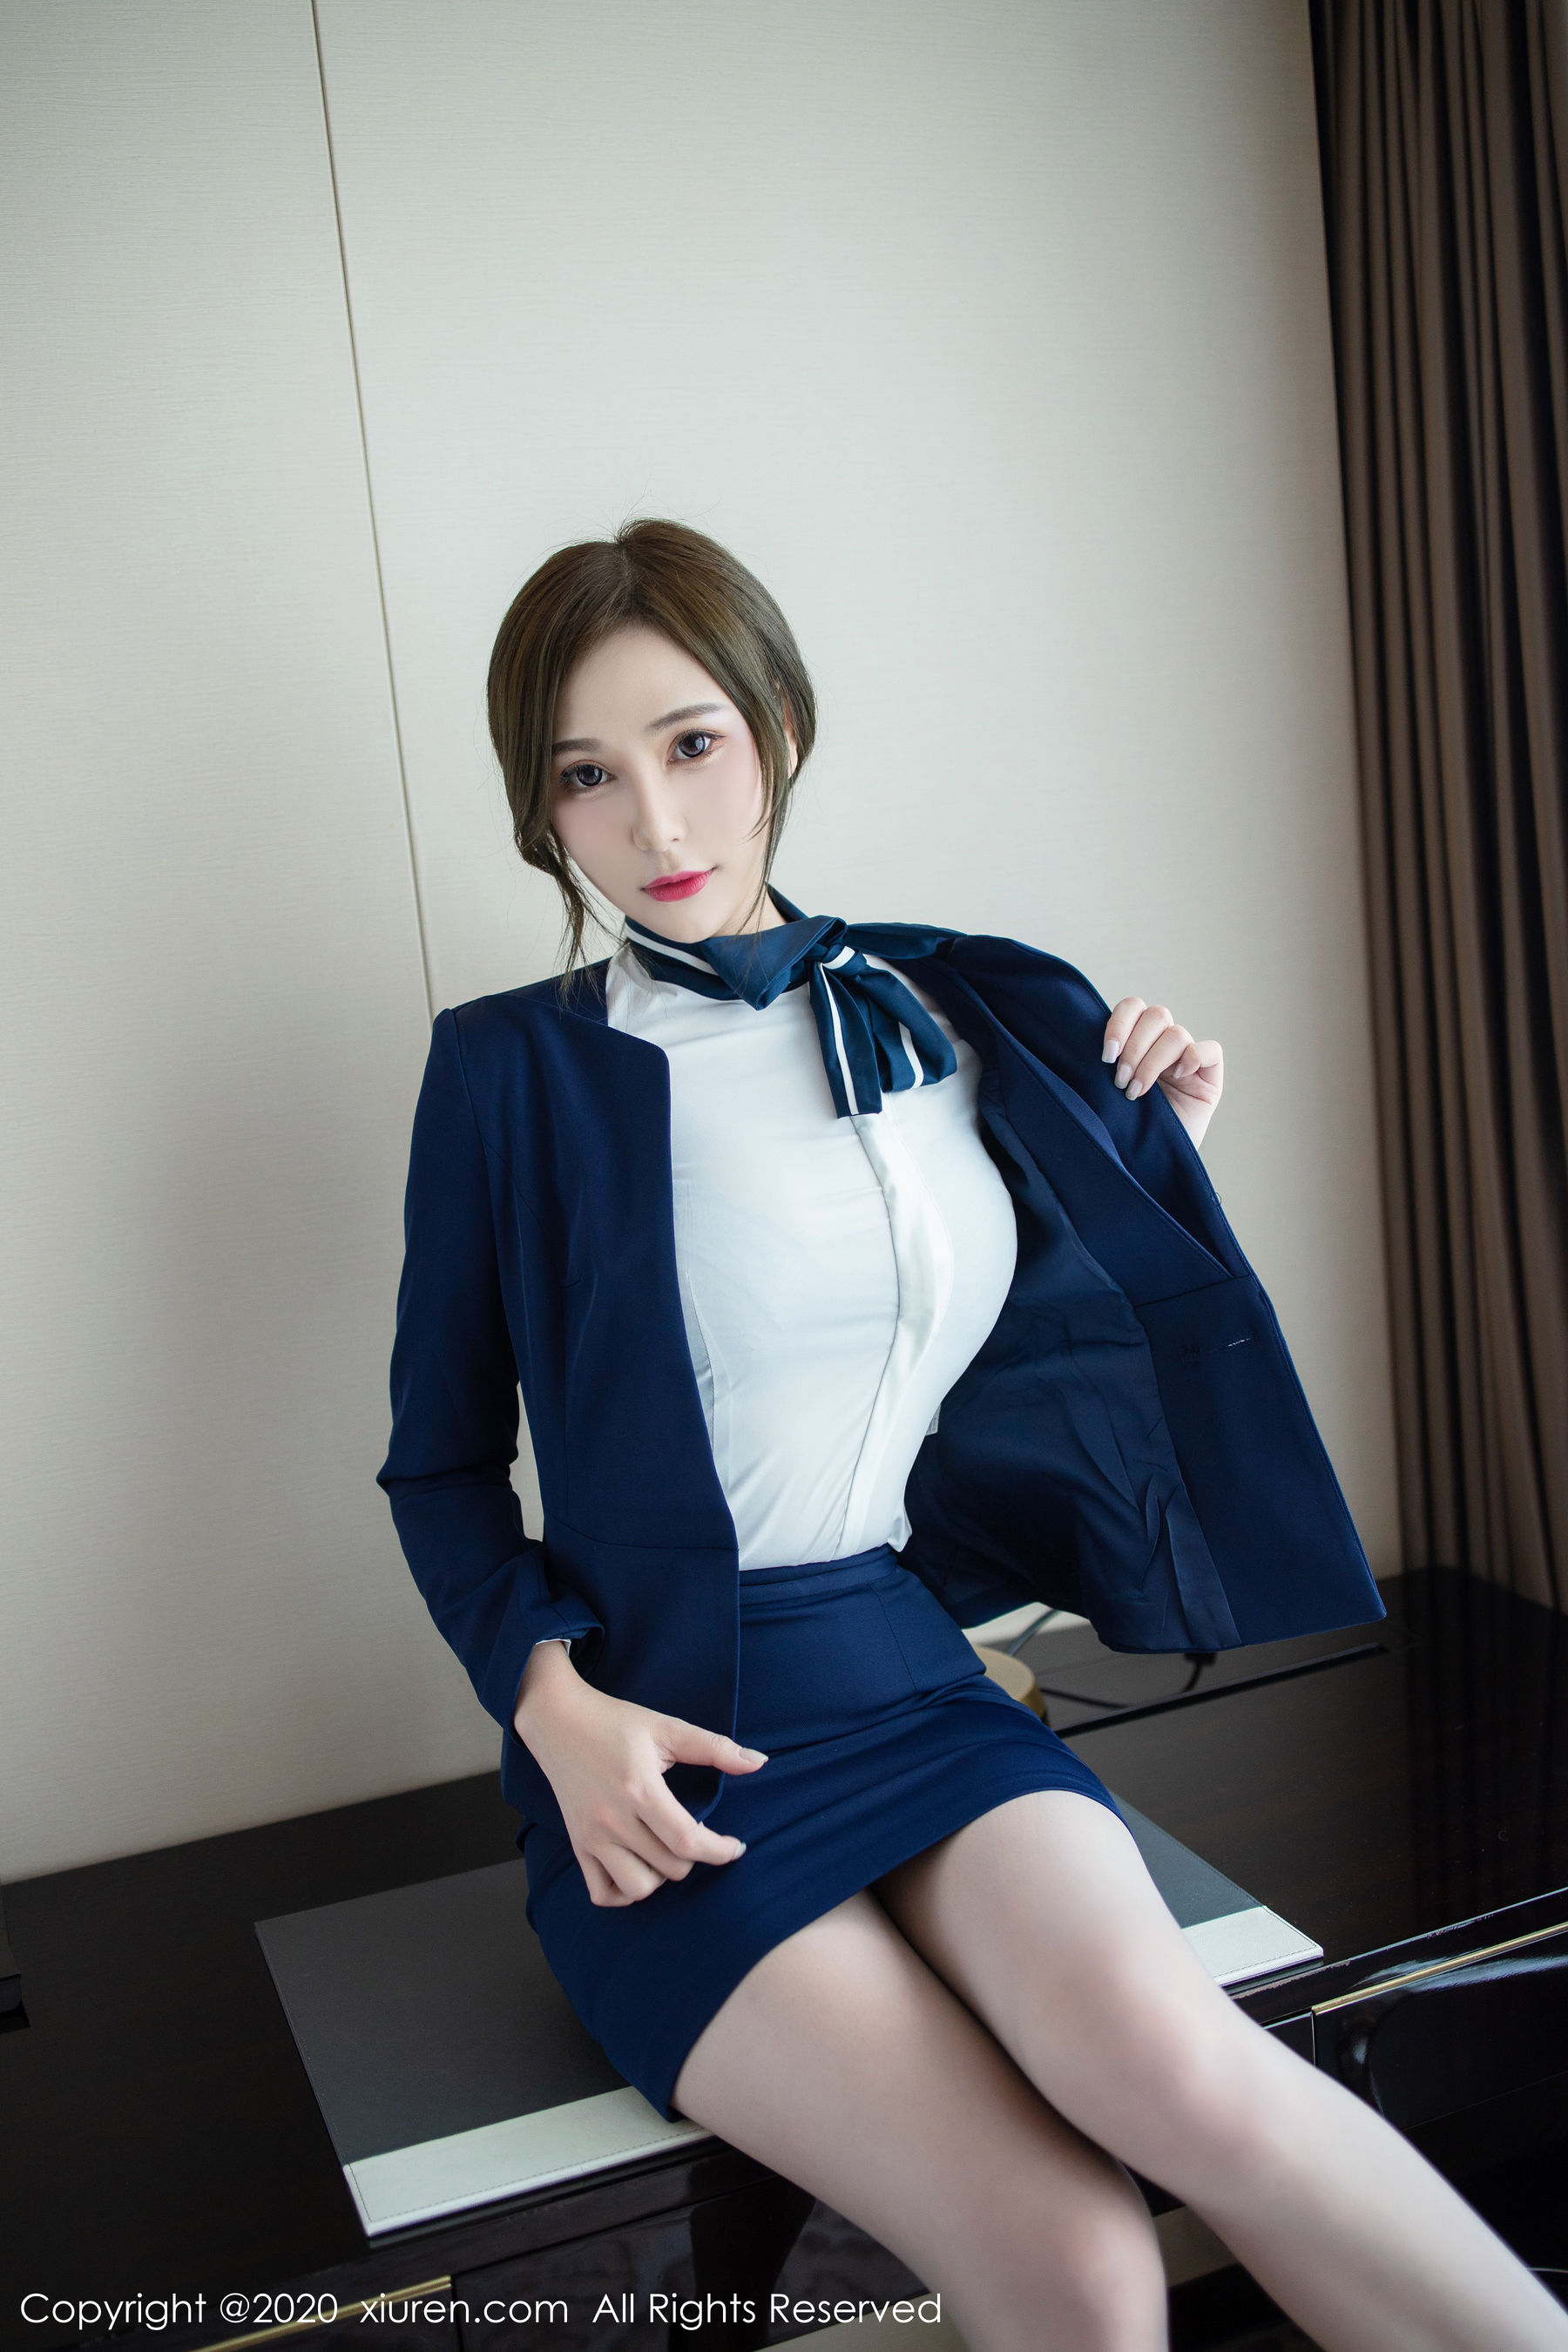 [人 xiuren] No.2221 lavinia meat “Sexy Classic Workplace Uniform” Photo Collection